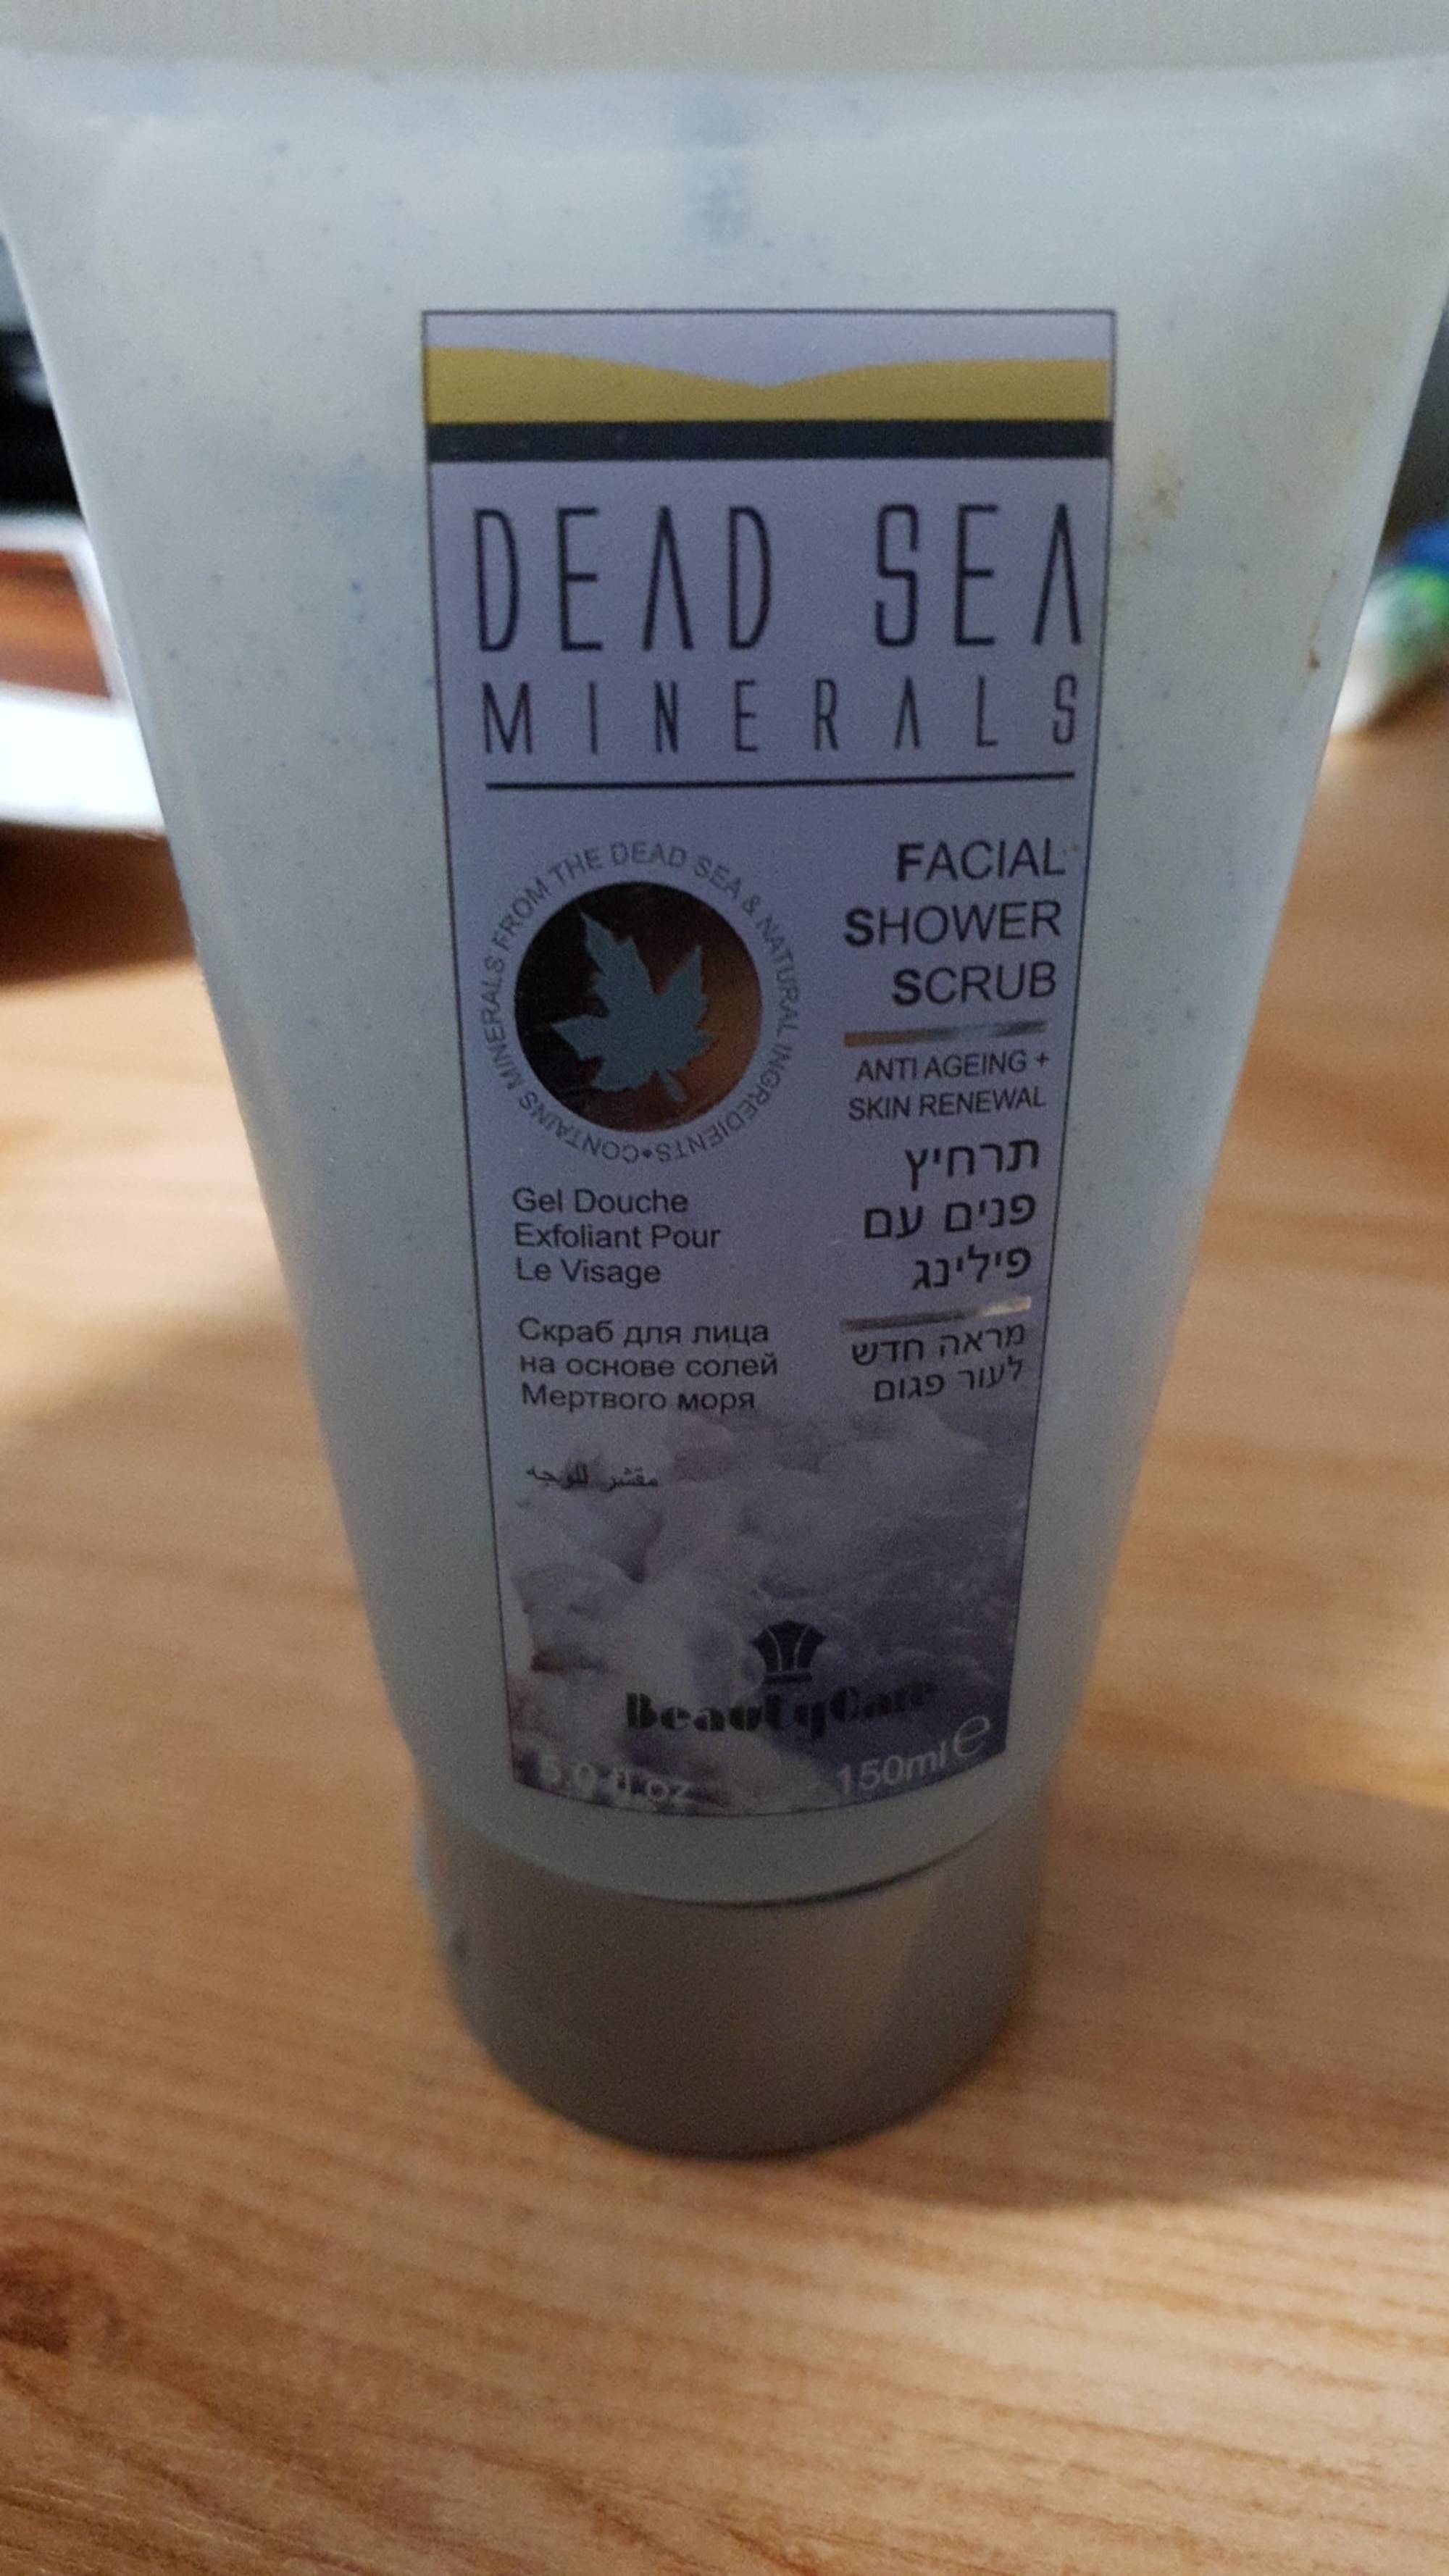 BEAUTY CARE - Dead sea minerals - Facial shower scrub